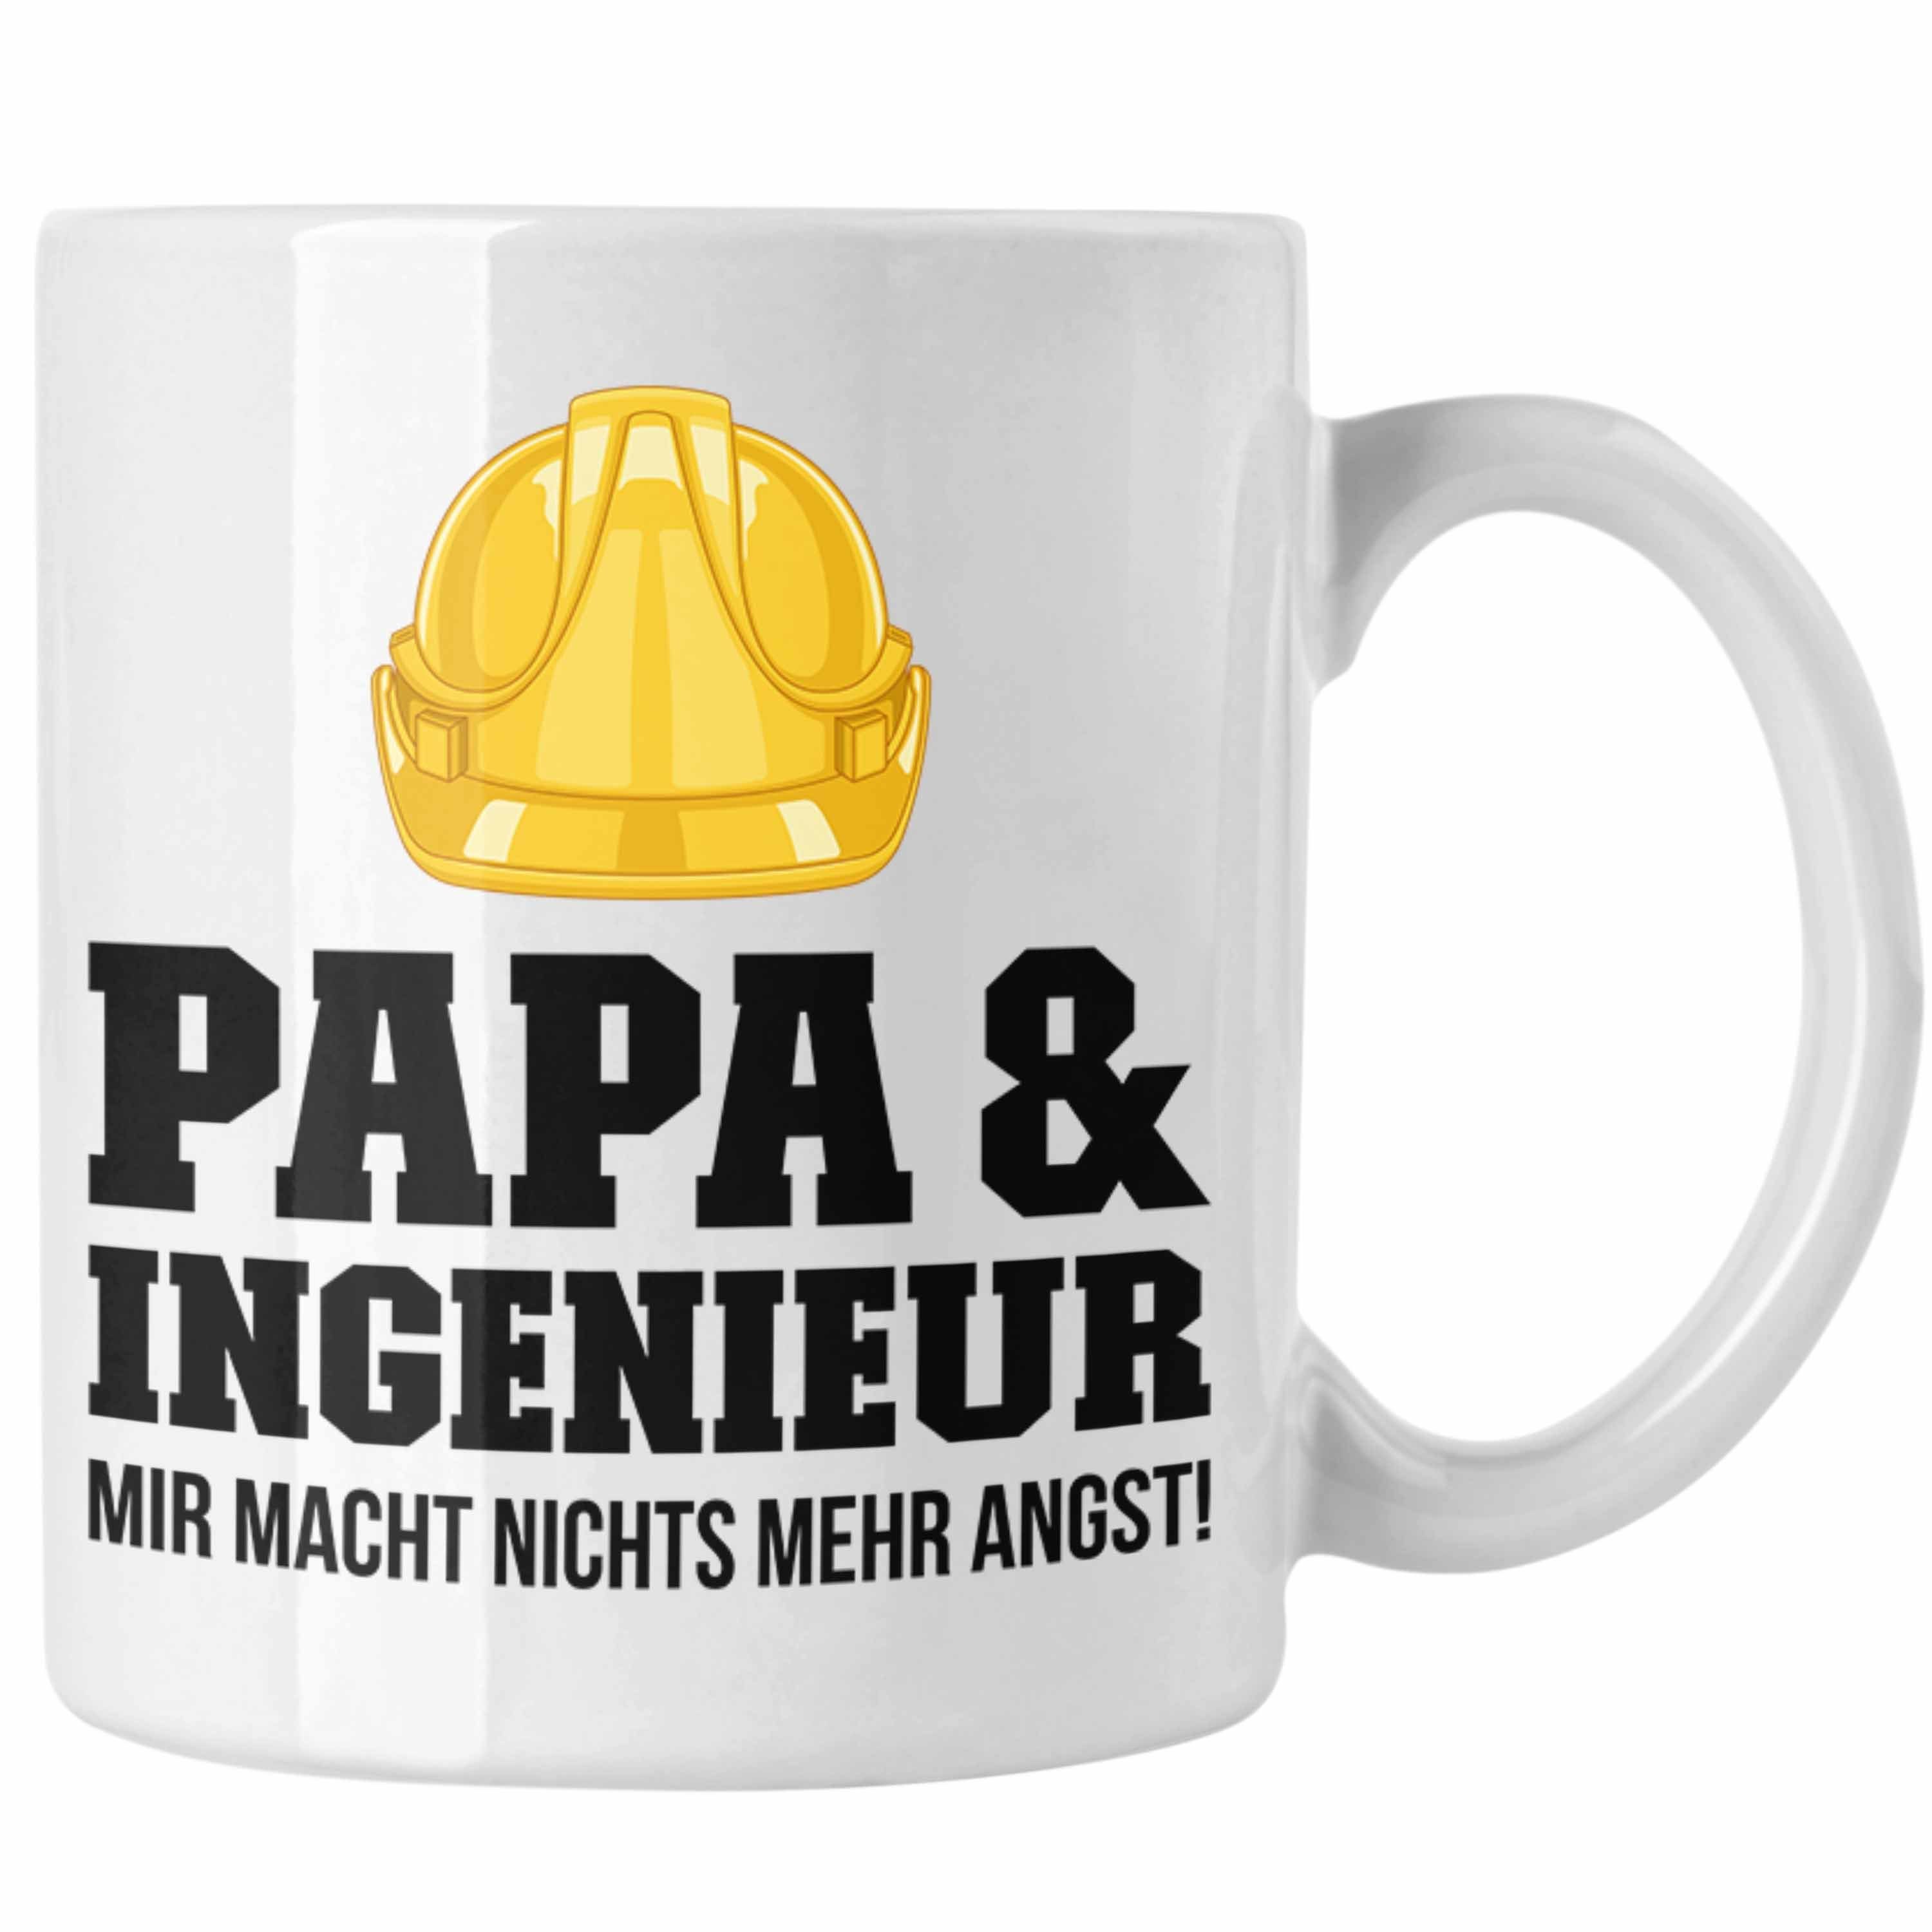 Trendation Tasse Ingenieur Ingeneur - Geschenk Geschenkidee Weiss Kaffeetasse Gadget Trendation Papa Tasse